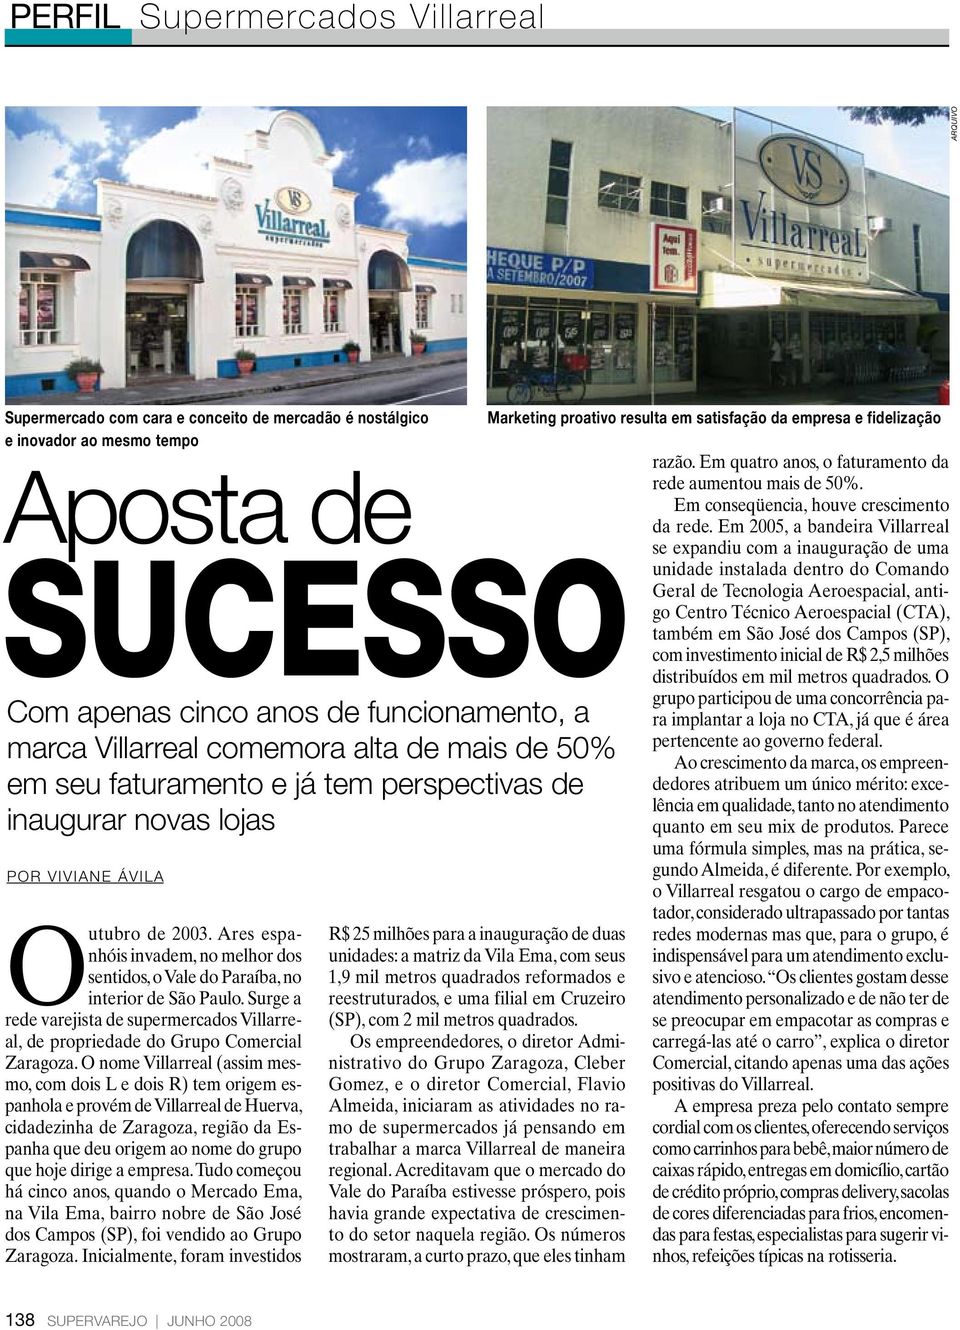 Surge a rede varejista de supermercados Villarreal, de propriedade do Grupo Comercial Zaragoza.